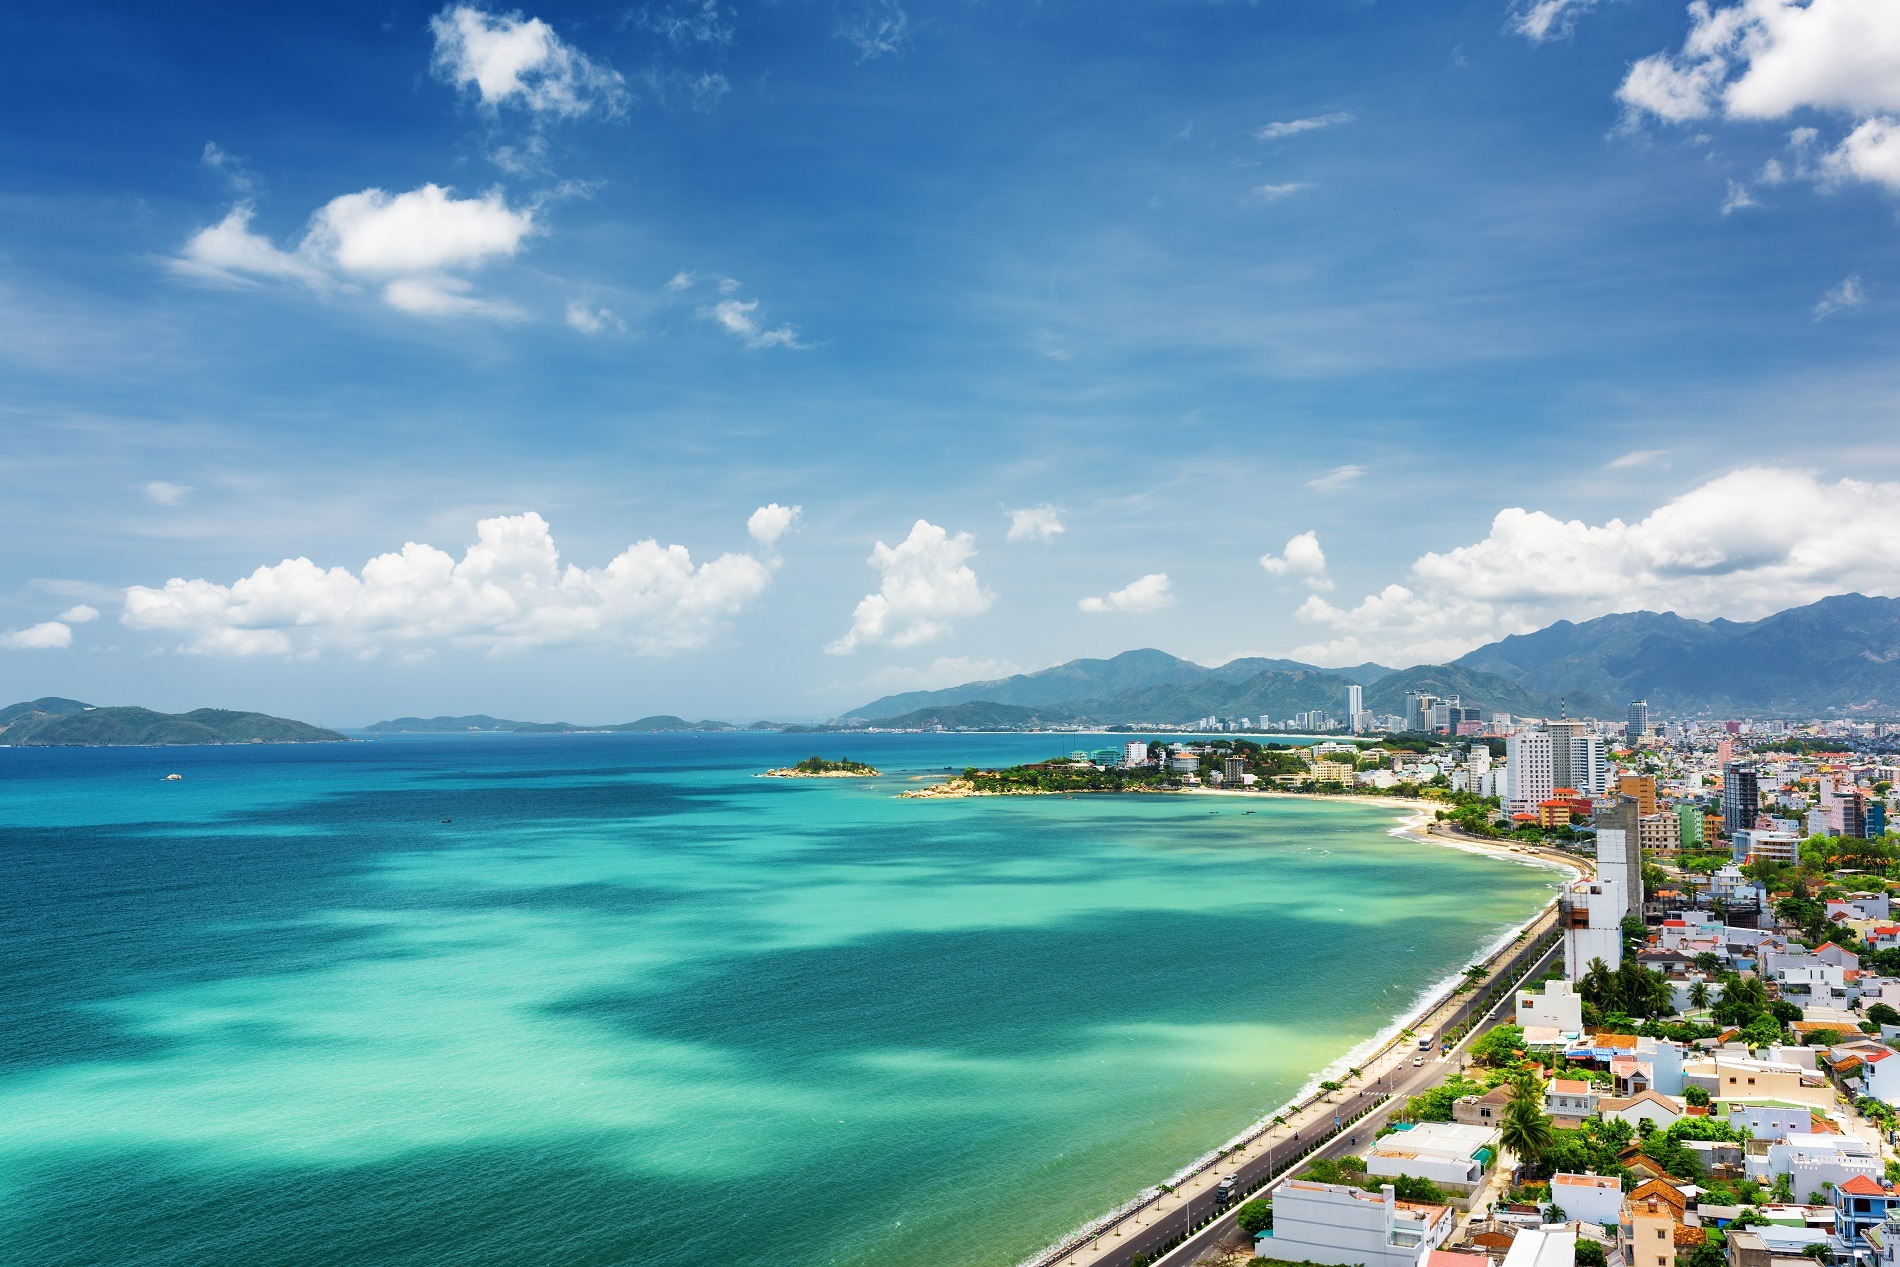 Cuối năm nên đi du lịch ở đâu đẹp? - Thành phố biển Nha Trang